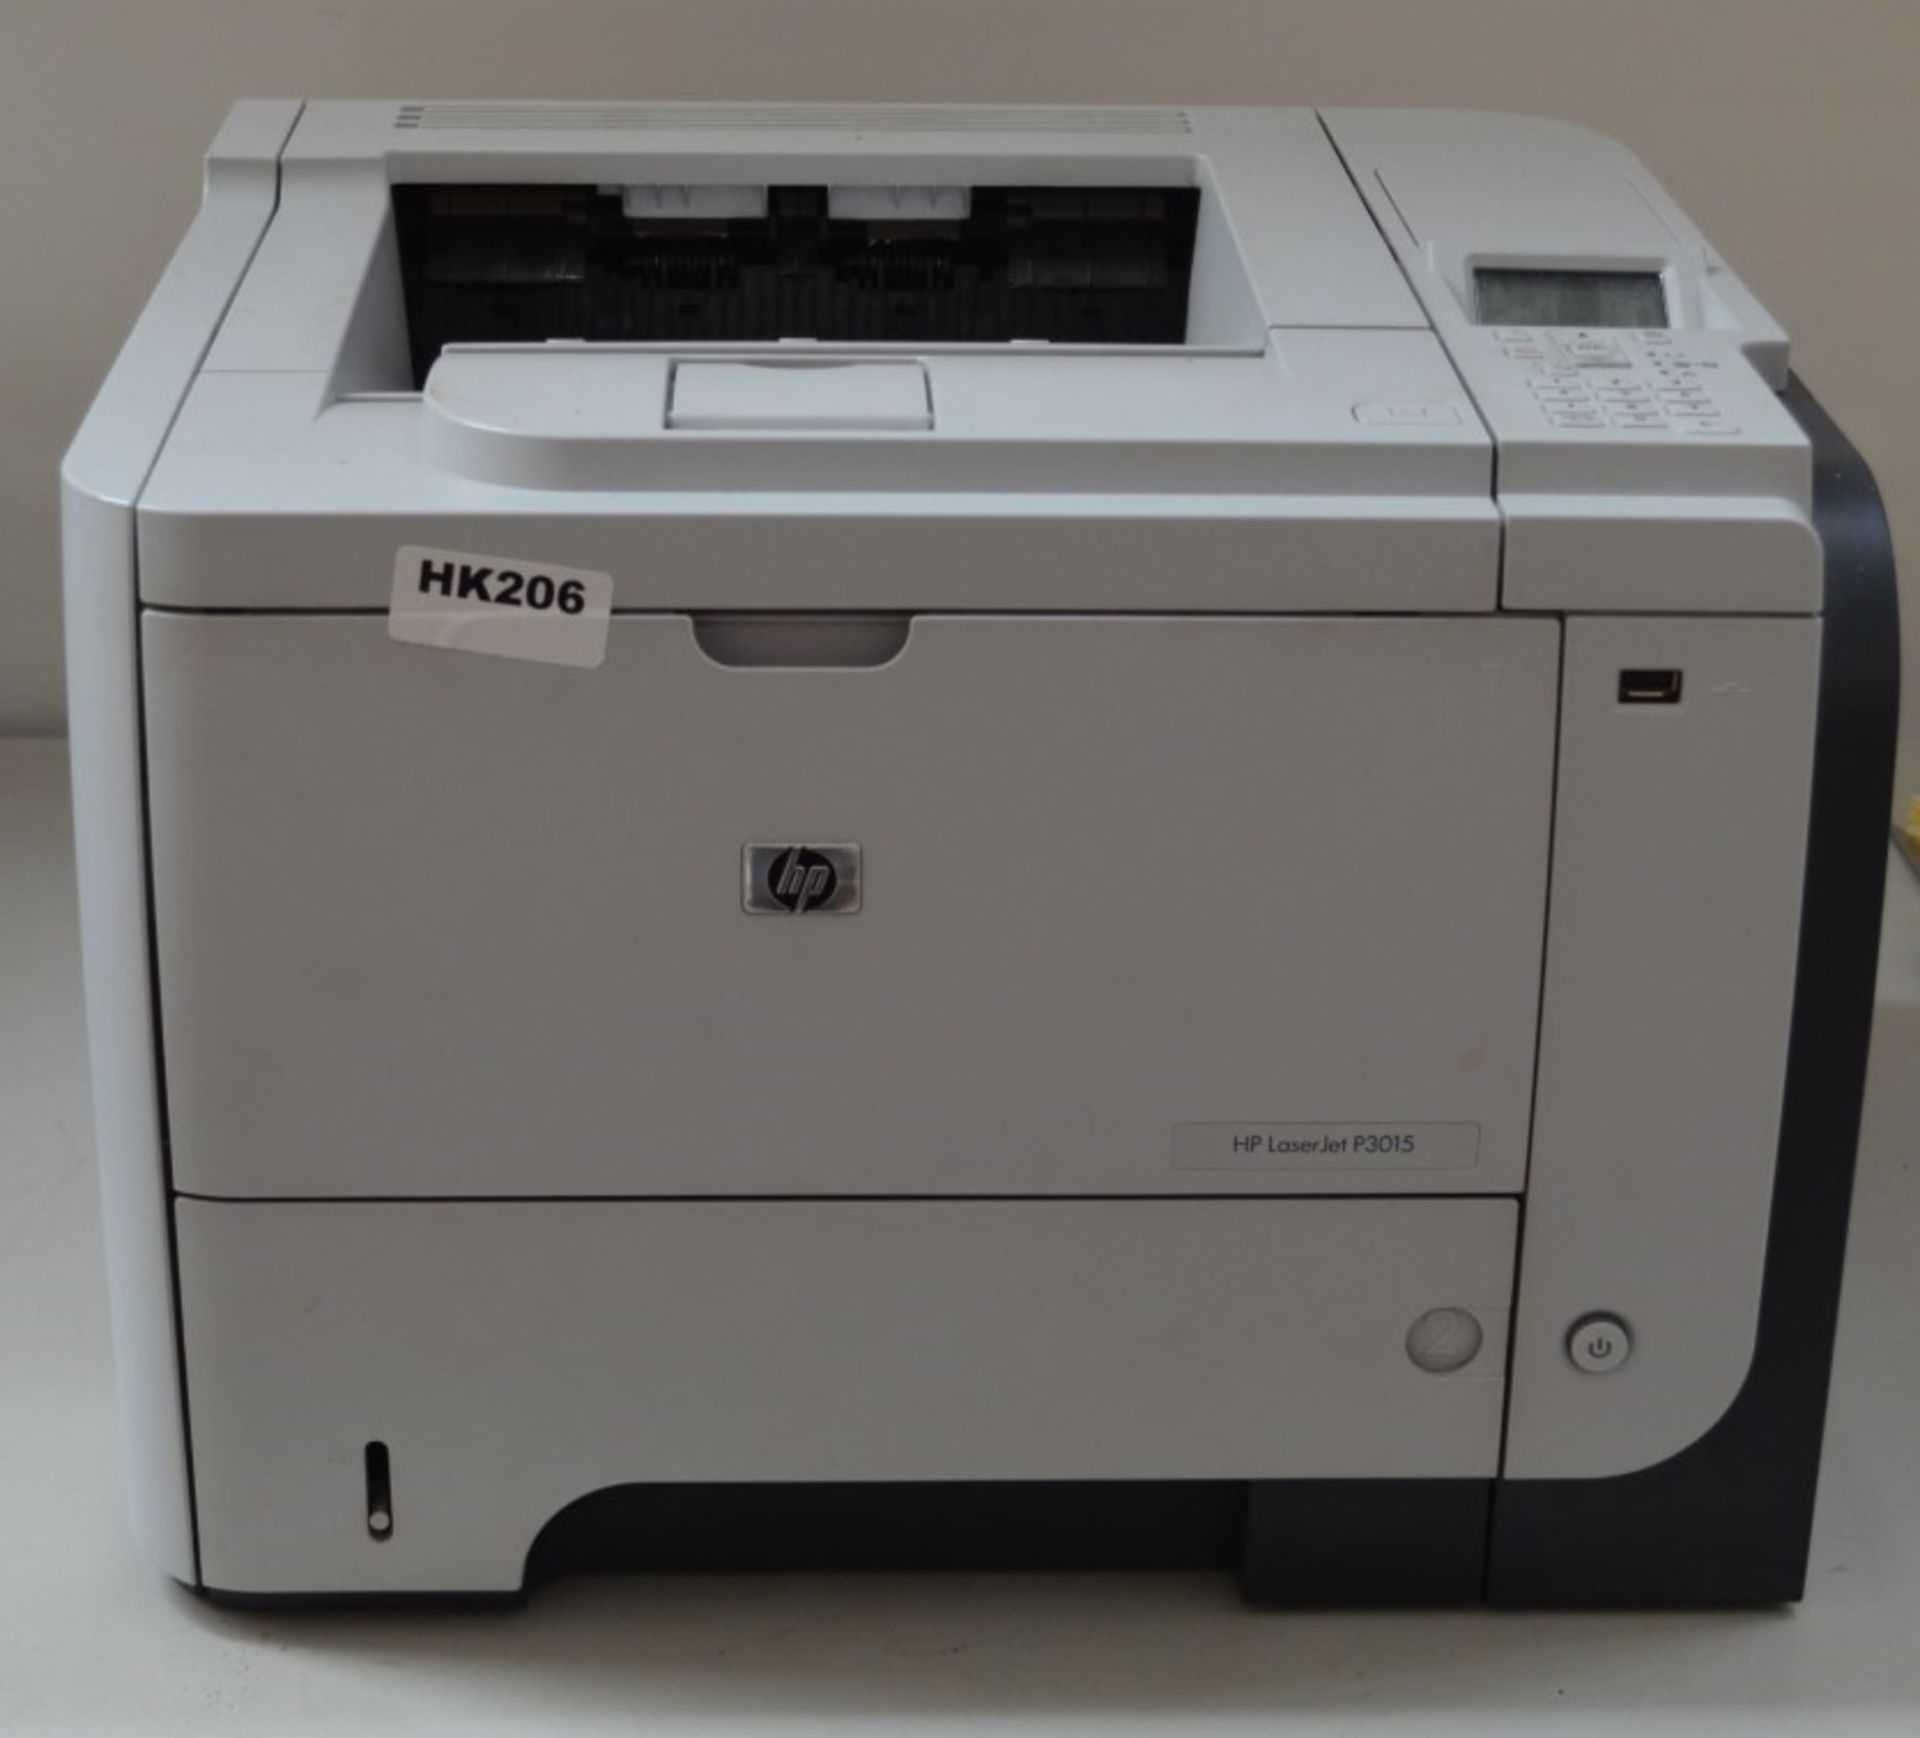 1 x HP P3015DN LaserJet Enterprise Printer- Ref HK206